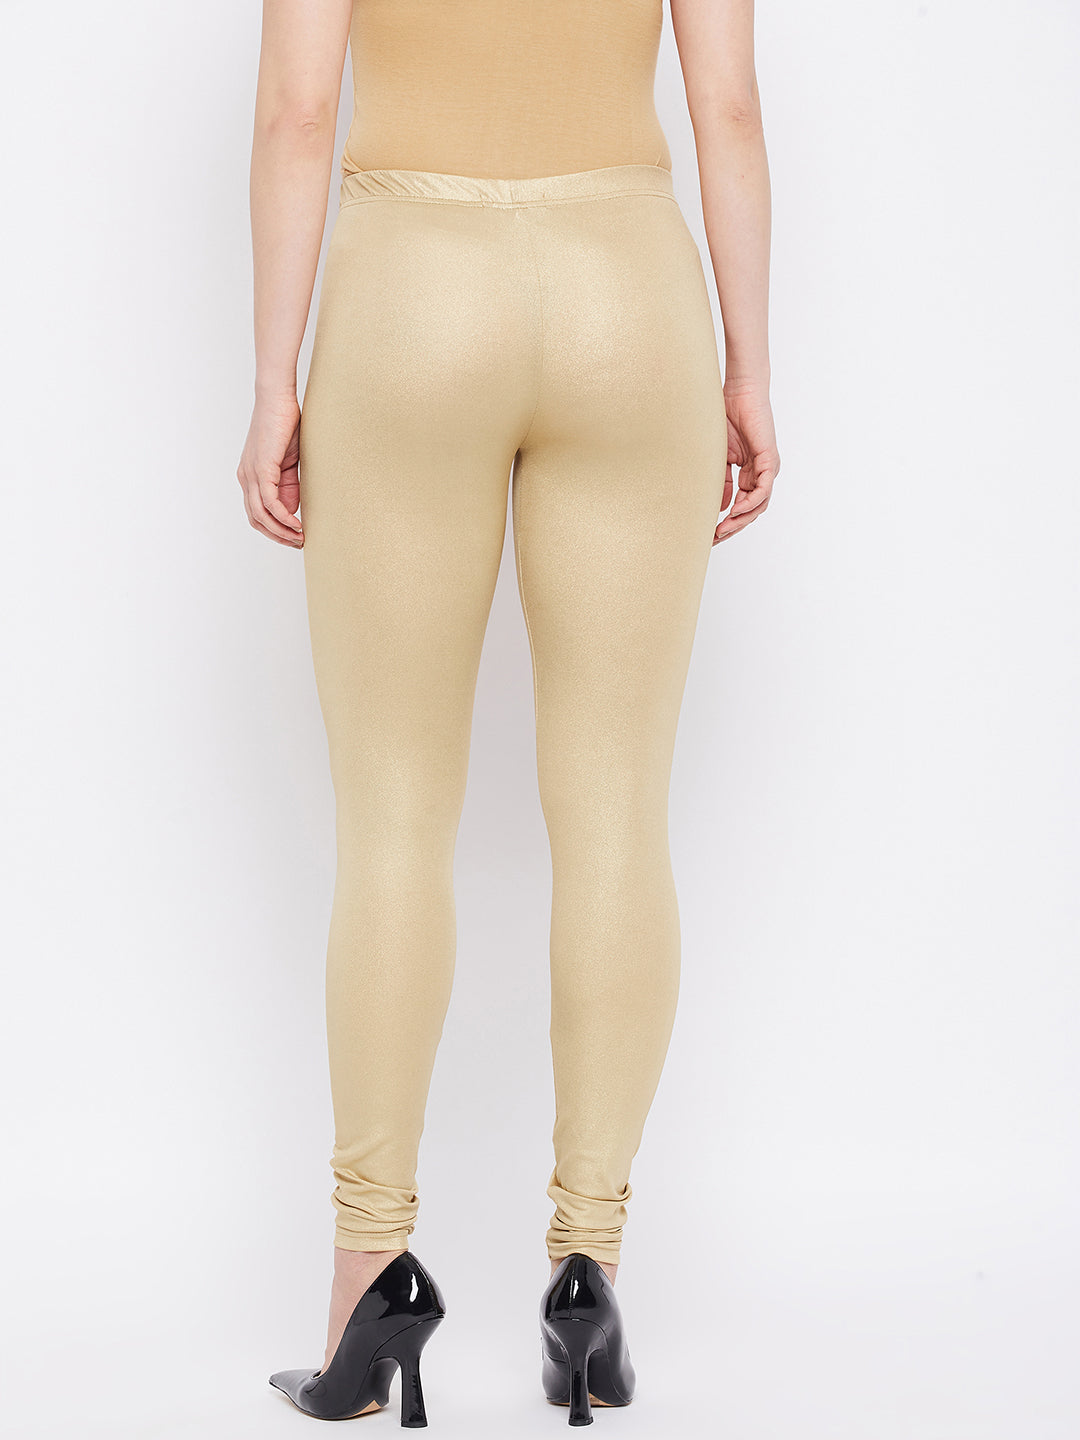 Shimmer Medium Gold Leggings  shimmer leggings gold – The Pajama Factory